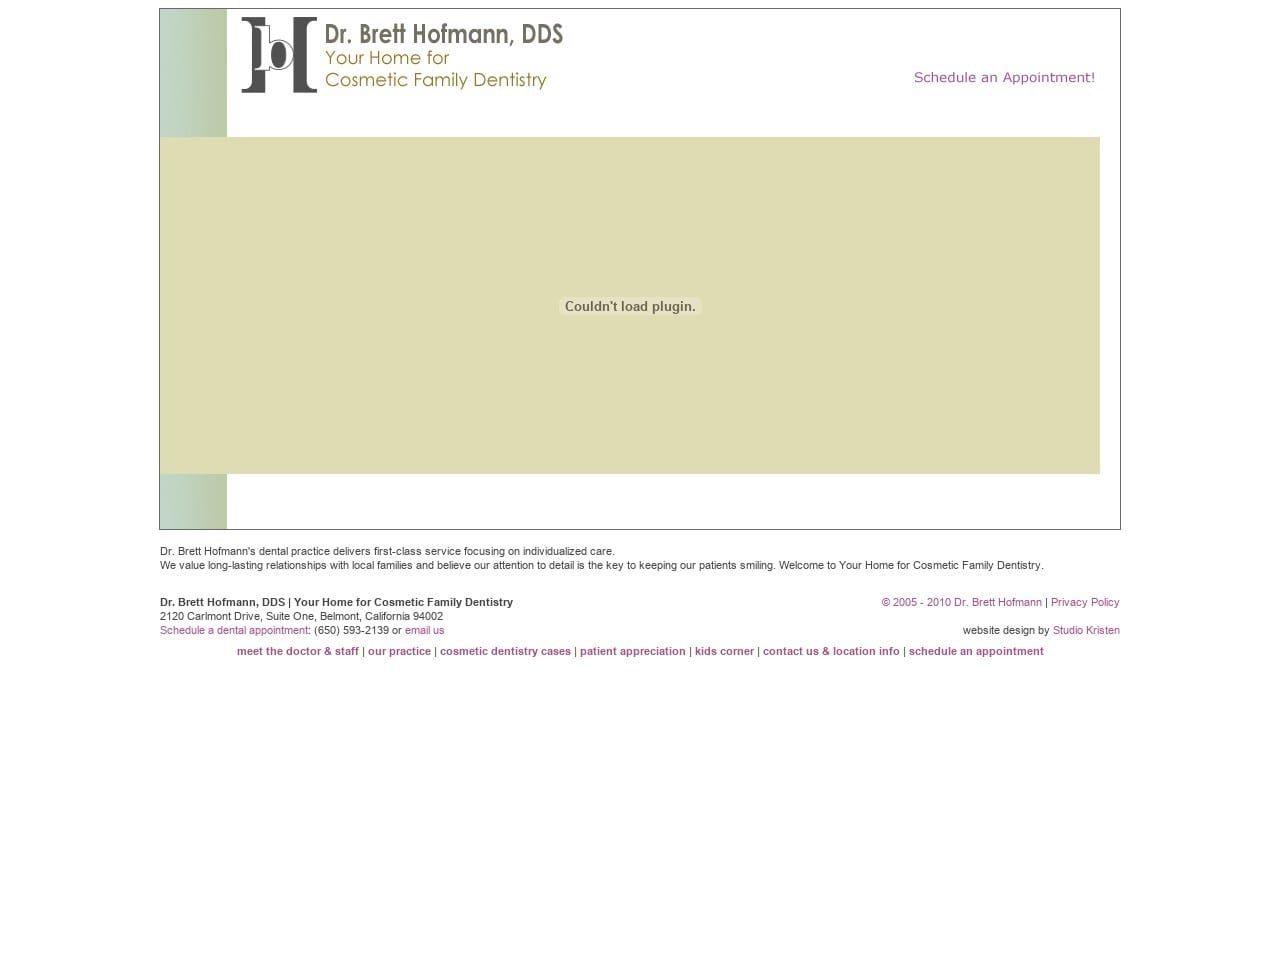 Dr. Brett Hofmann DDS Website Screenshot from hofmanndds.com